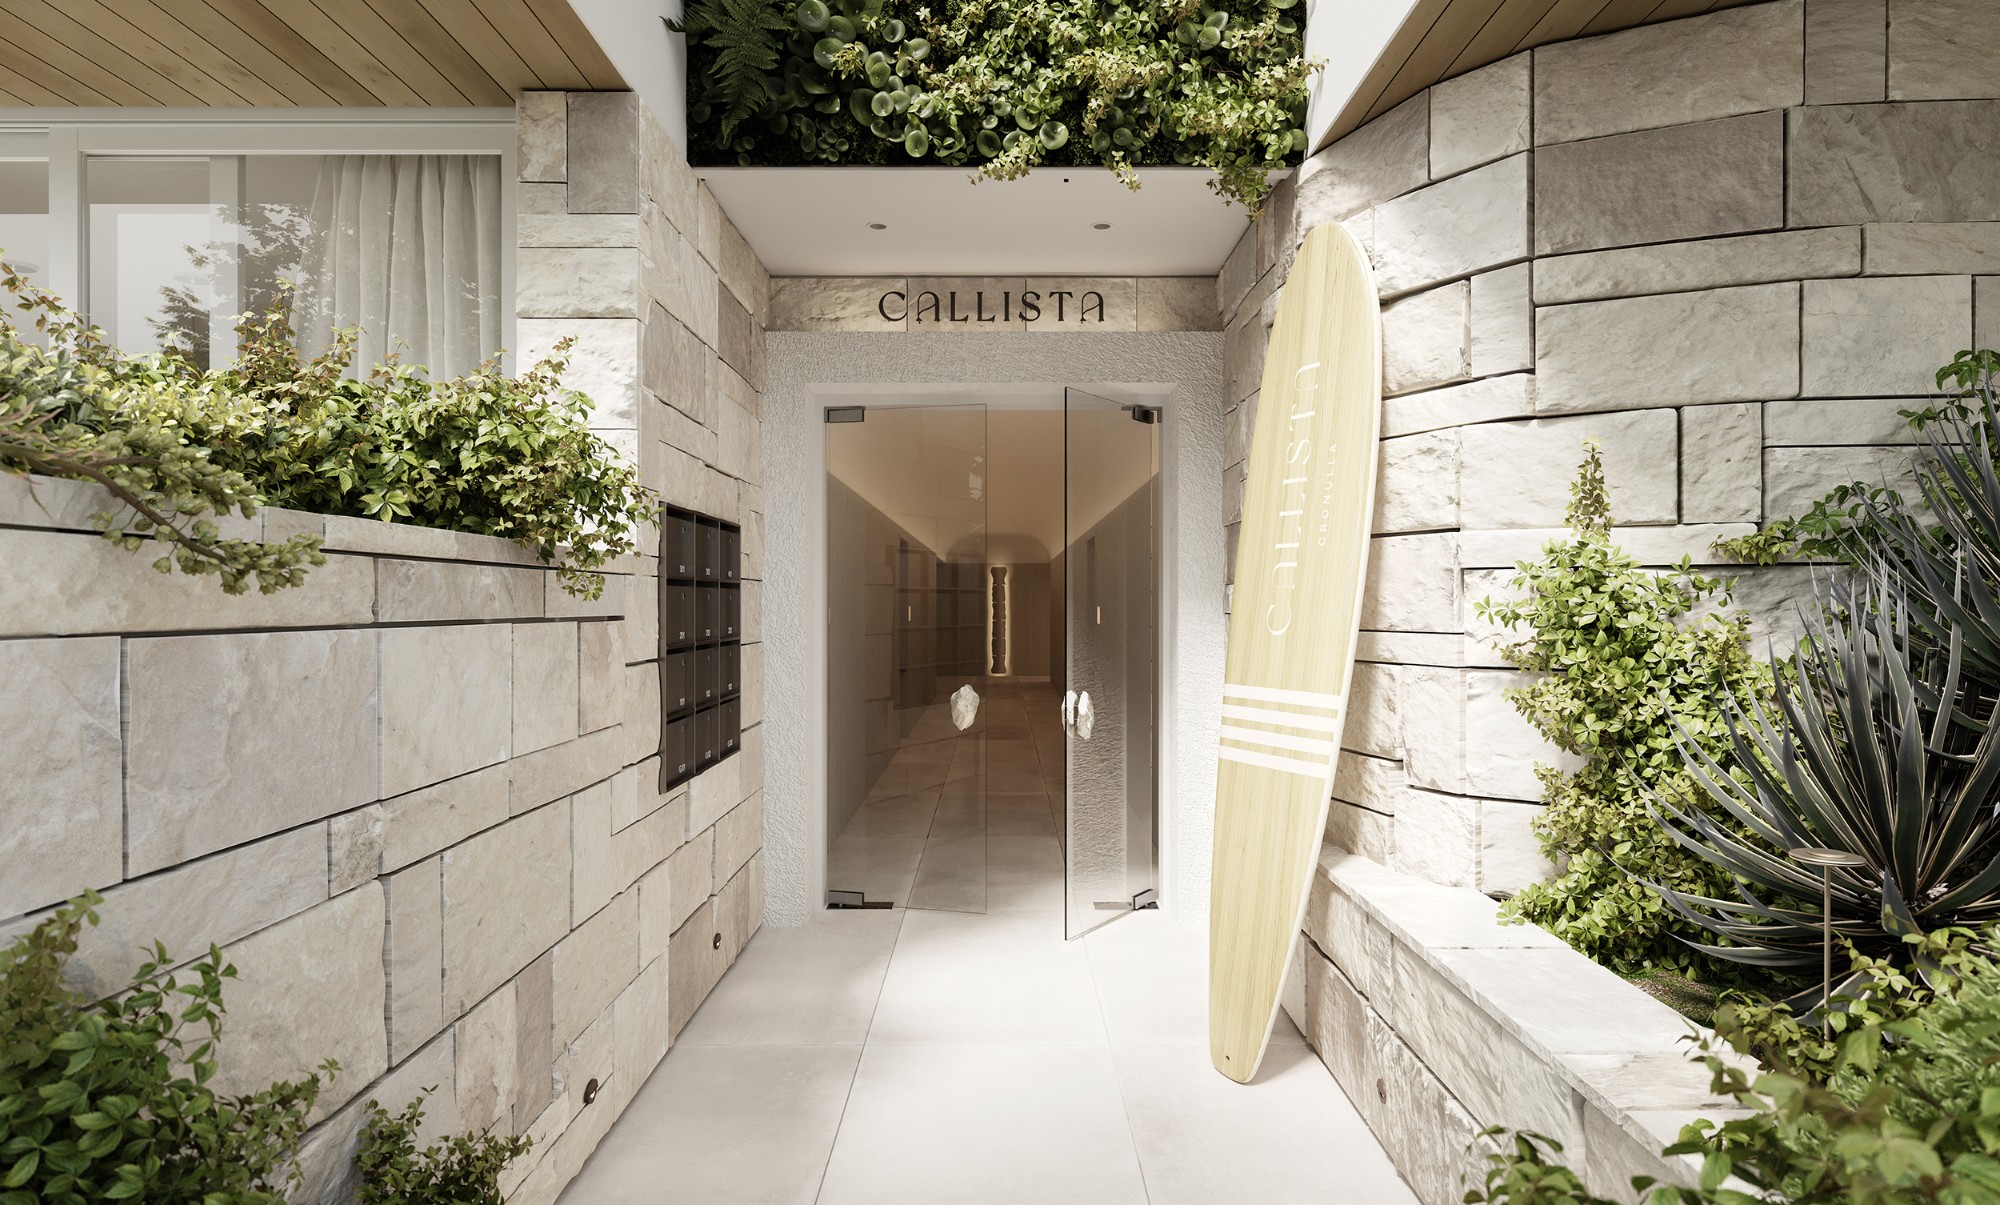 Callista Design - The Entrance